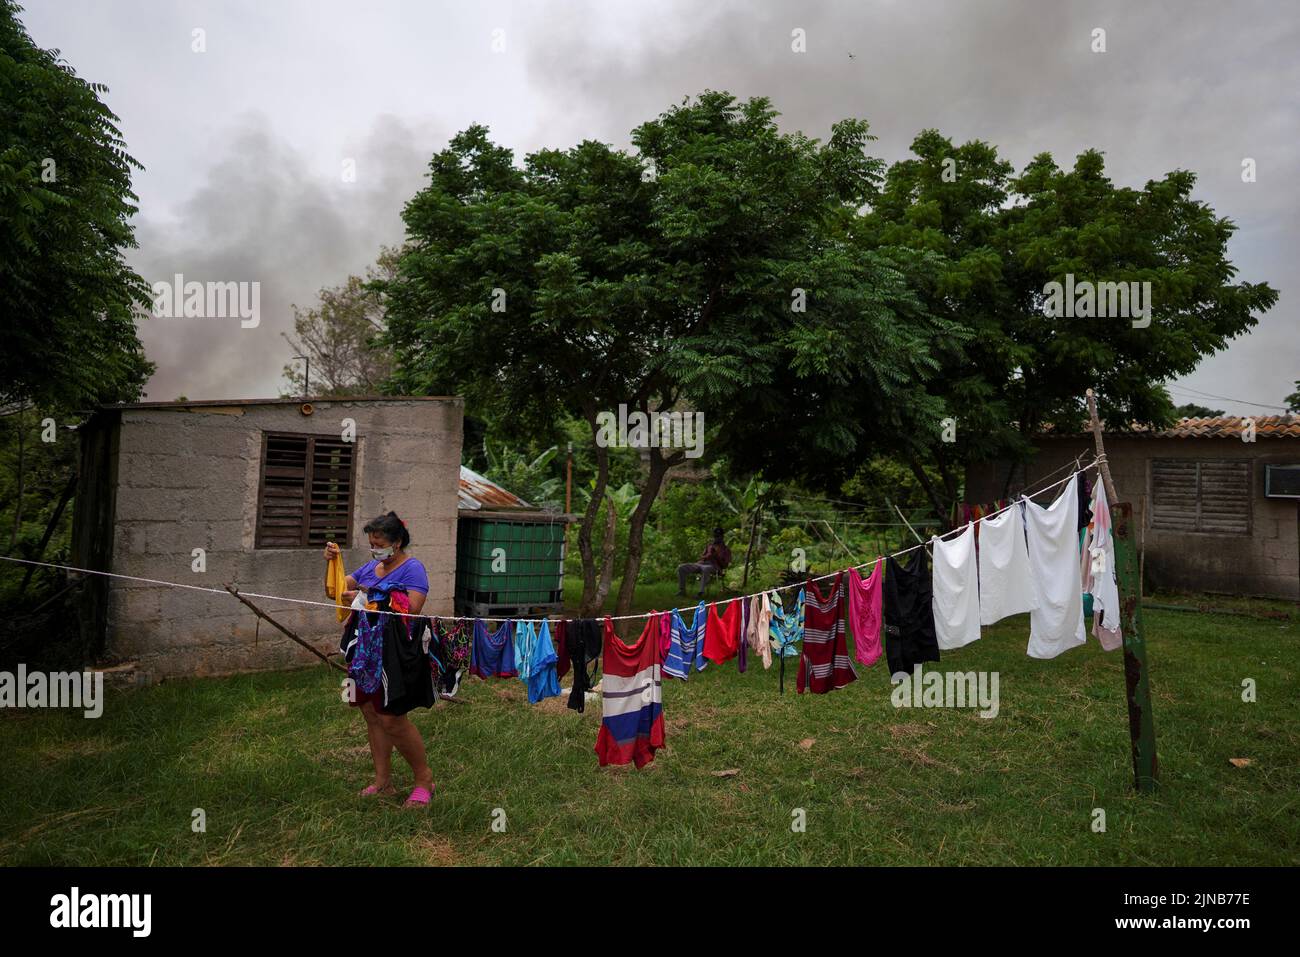 Adelaide Labradda, 60 ans, laisse sécher ses vêtements au milieu de la fumée provenant d'une zone détruite de chars qui ont explosé près du port de navires-citernes de Cuba à Matanzas, Cuba, 10 août 2022. REUTERS/Alexandre Meneghini Banque D'Images